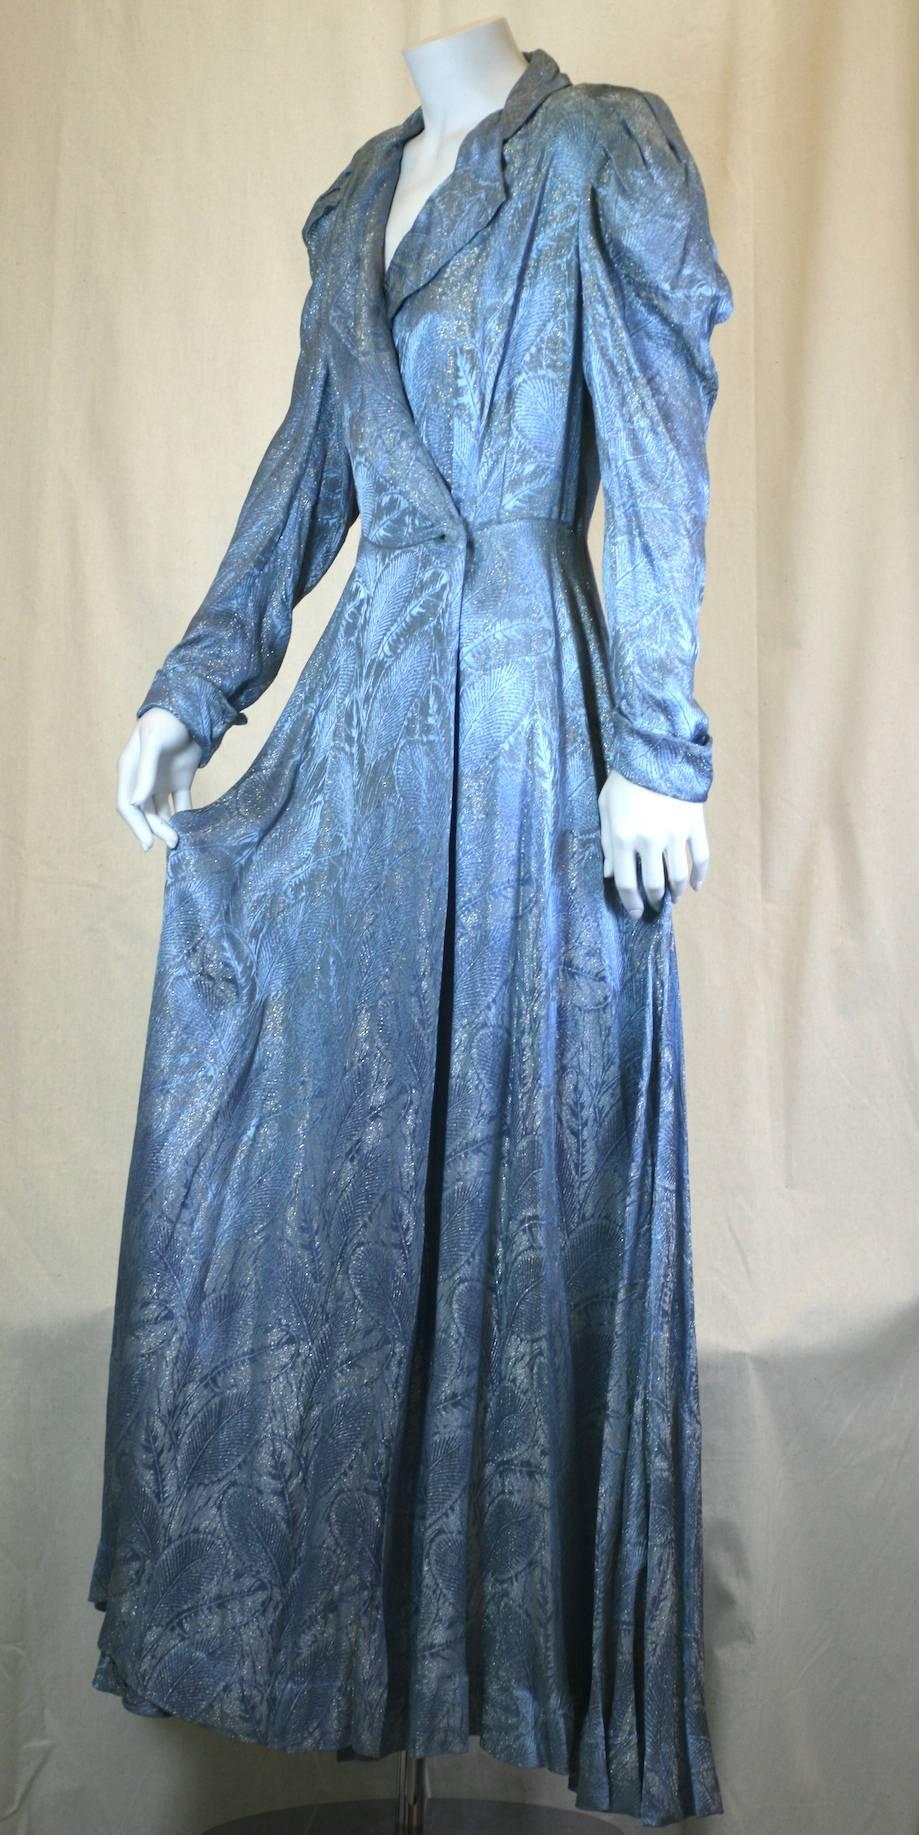 Robe portefeuille Art Déco argentée et bleue, destinée à l'origine au boudoir, mais qui fait merveille en tant que manteau de soirée. Fabriqué à partir d'une soyeuse lame française métallisée, ce haut de style hollywoodien présente un magnifique